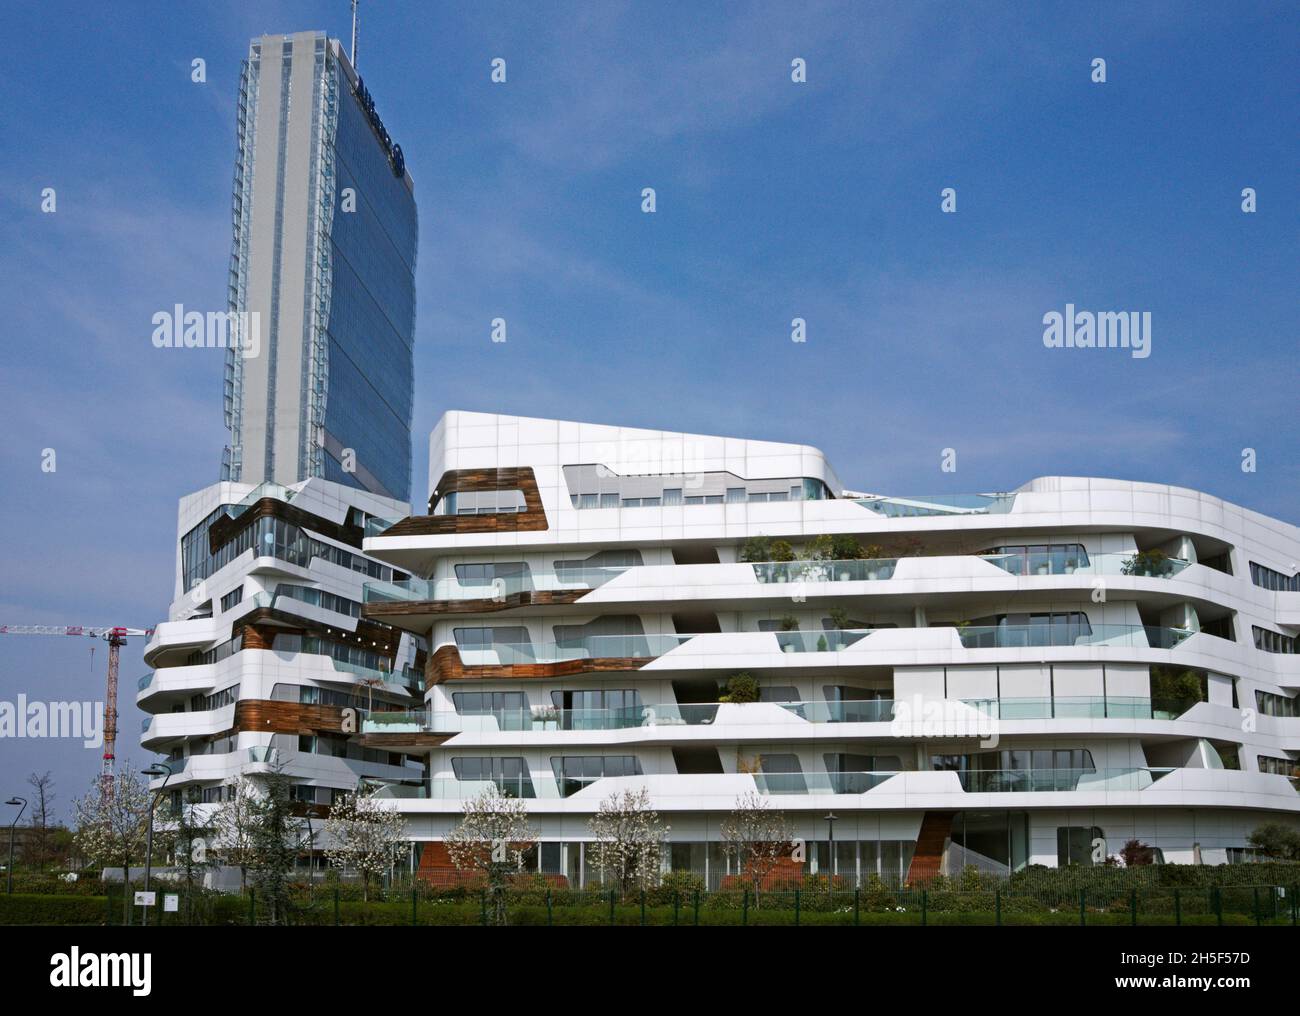 Residencias Hadid y Torre Isozaki en el complejo 'City Life' en Milán, Italia Foto de stock